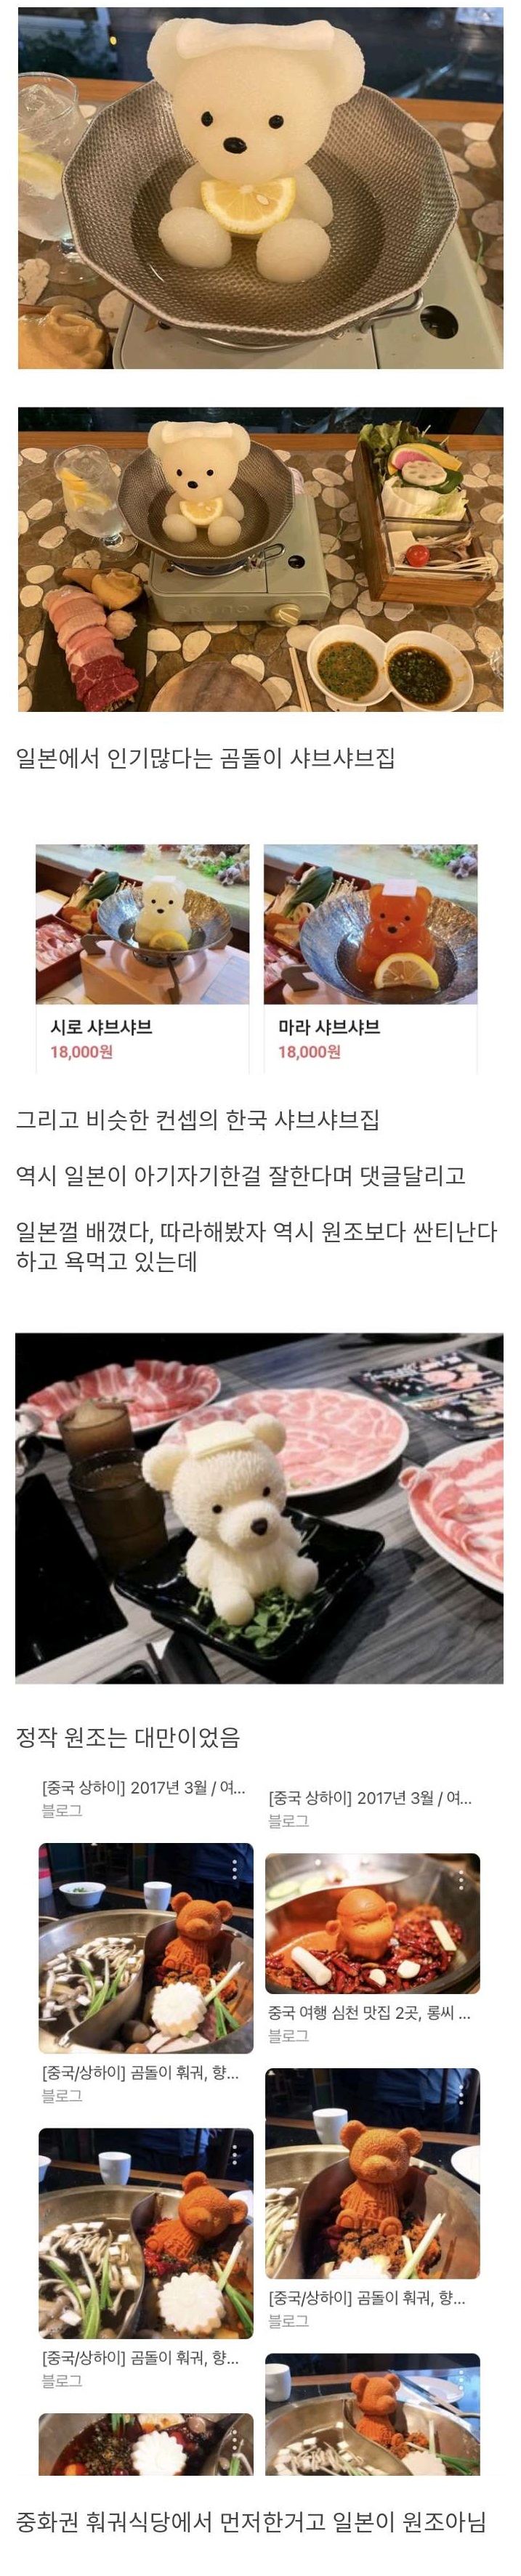 2 일본 식당 컨셉 표절했다고 욕먹은 한국 식당 곰탕은 한국이 원조 아닌가.jpg